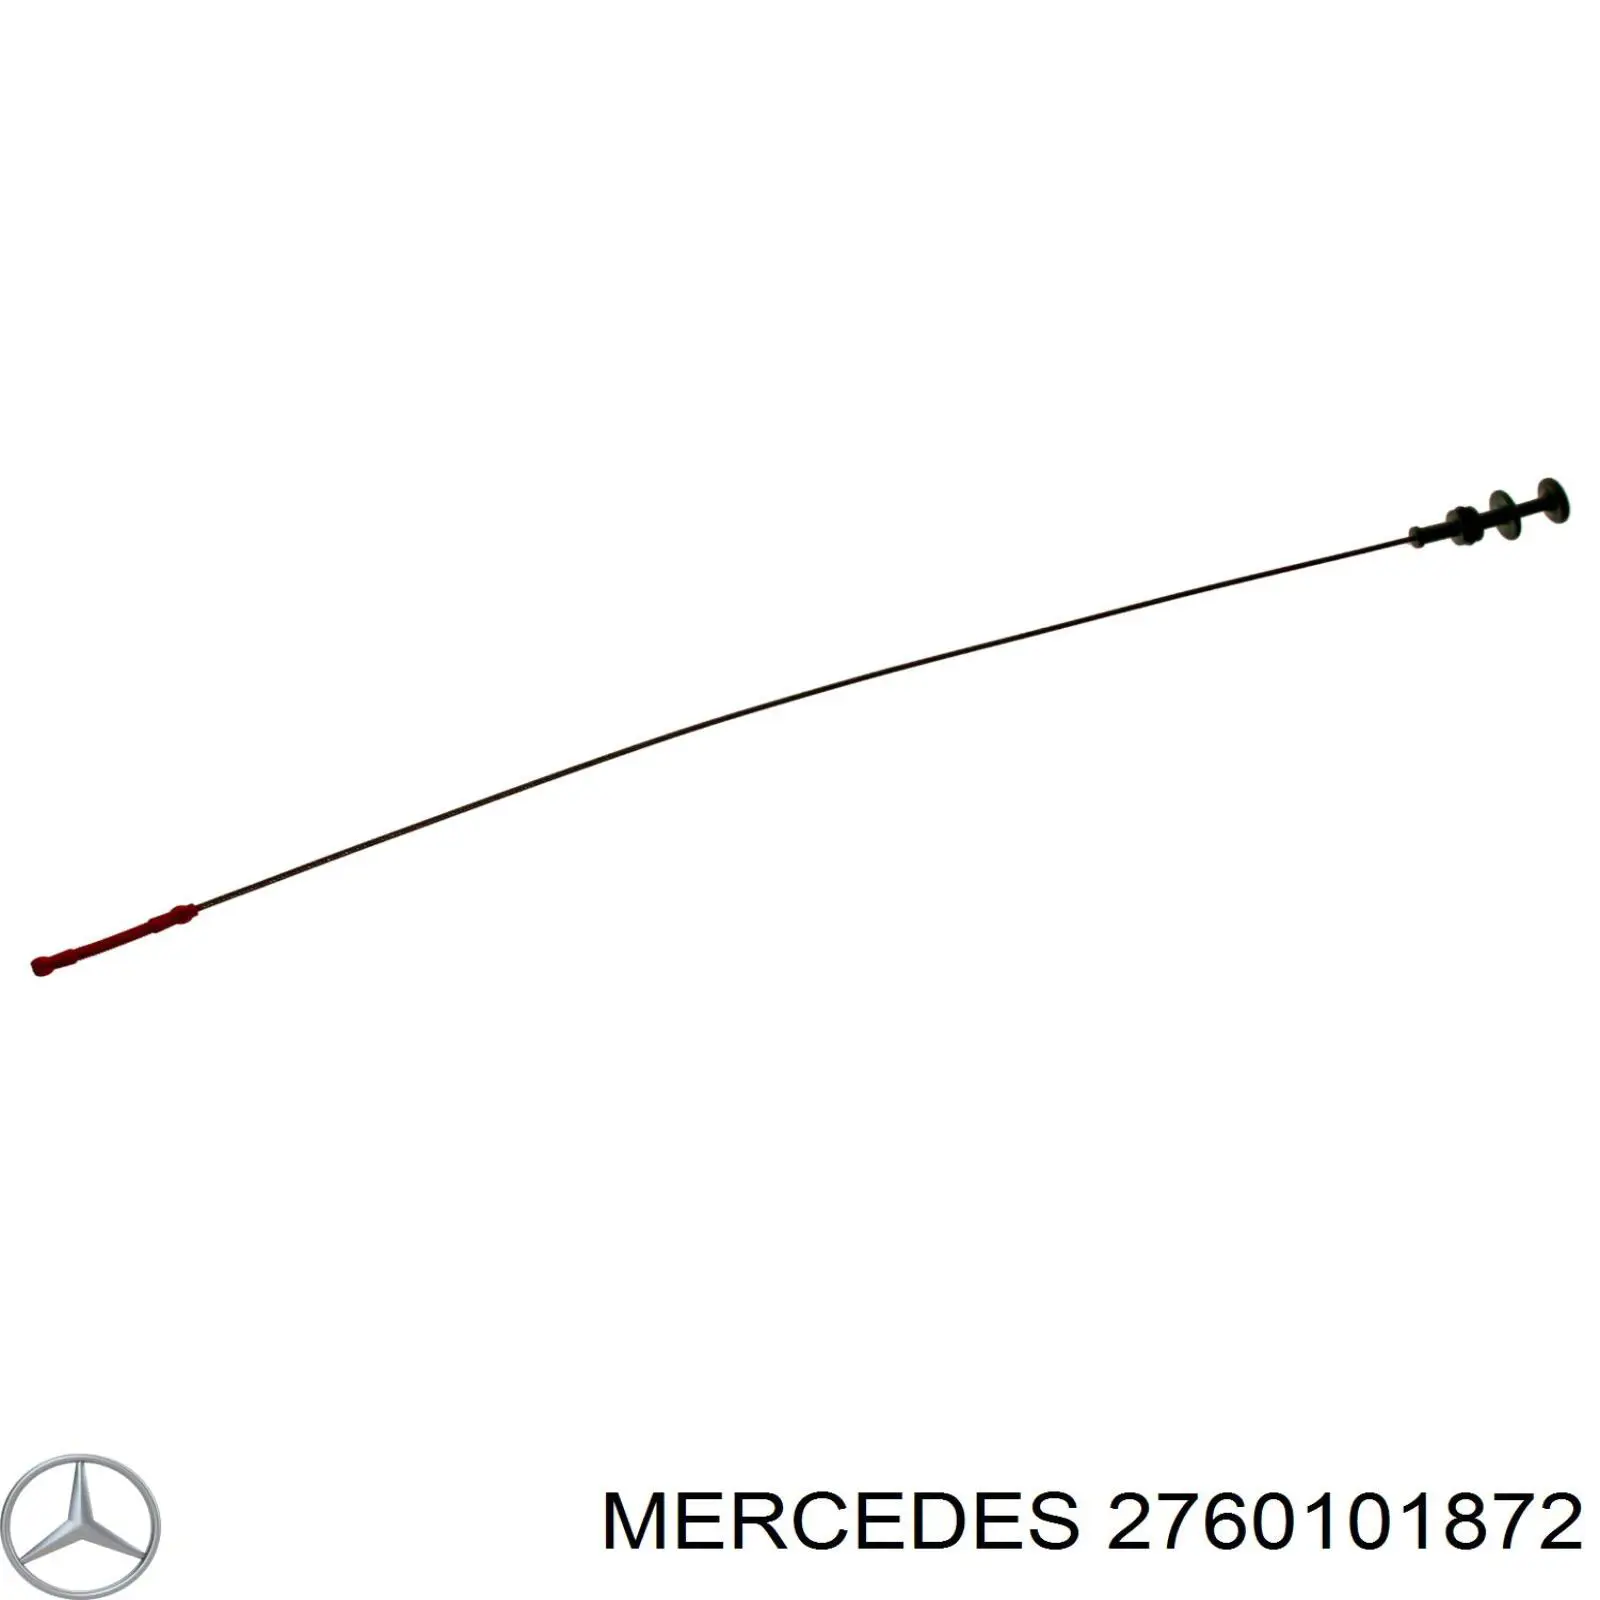 2760101872 Mercedes sonda (indicador do nível de óleo no motor)